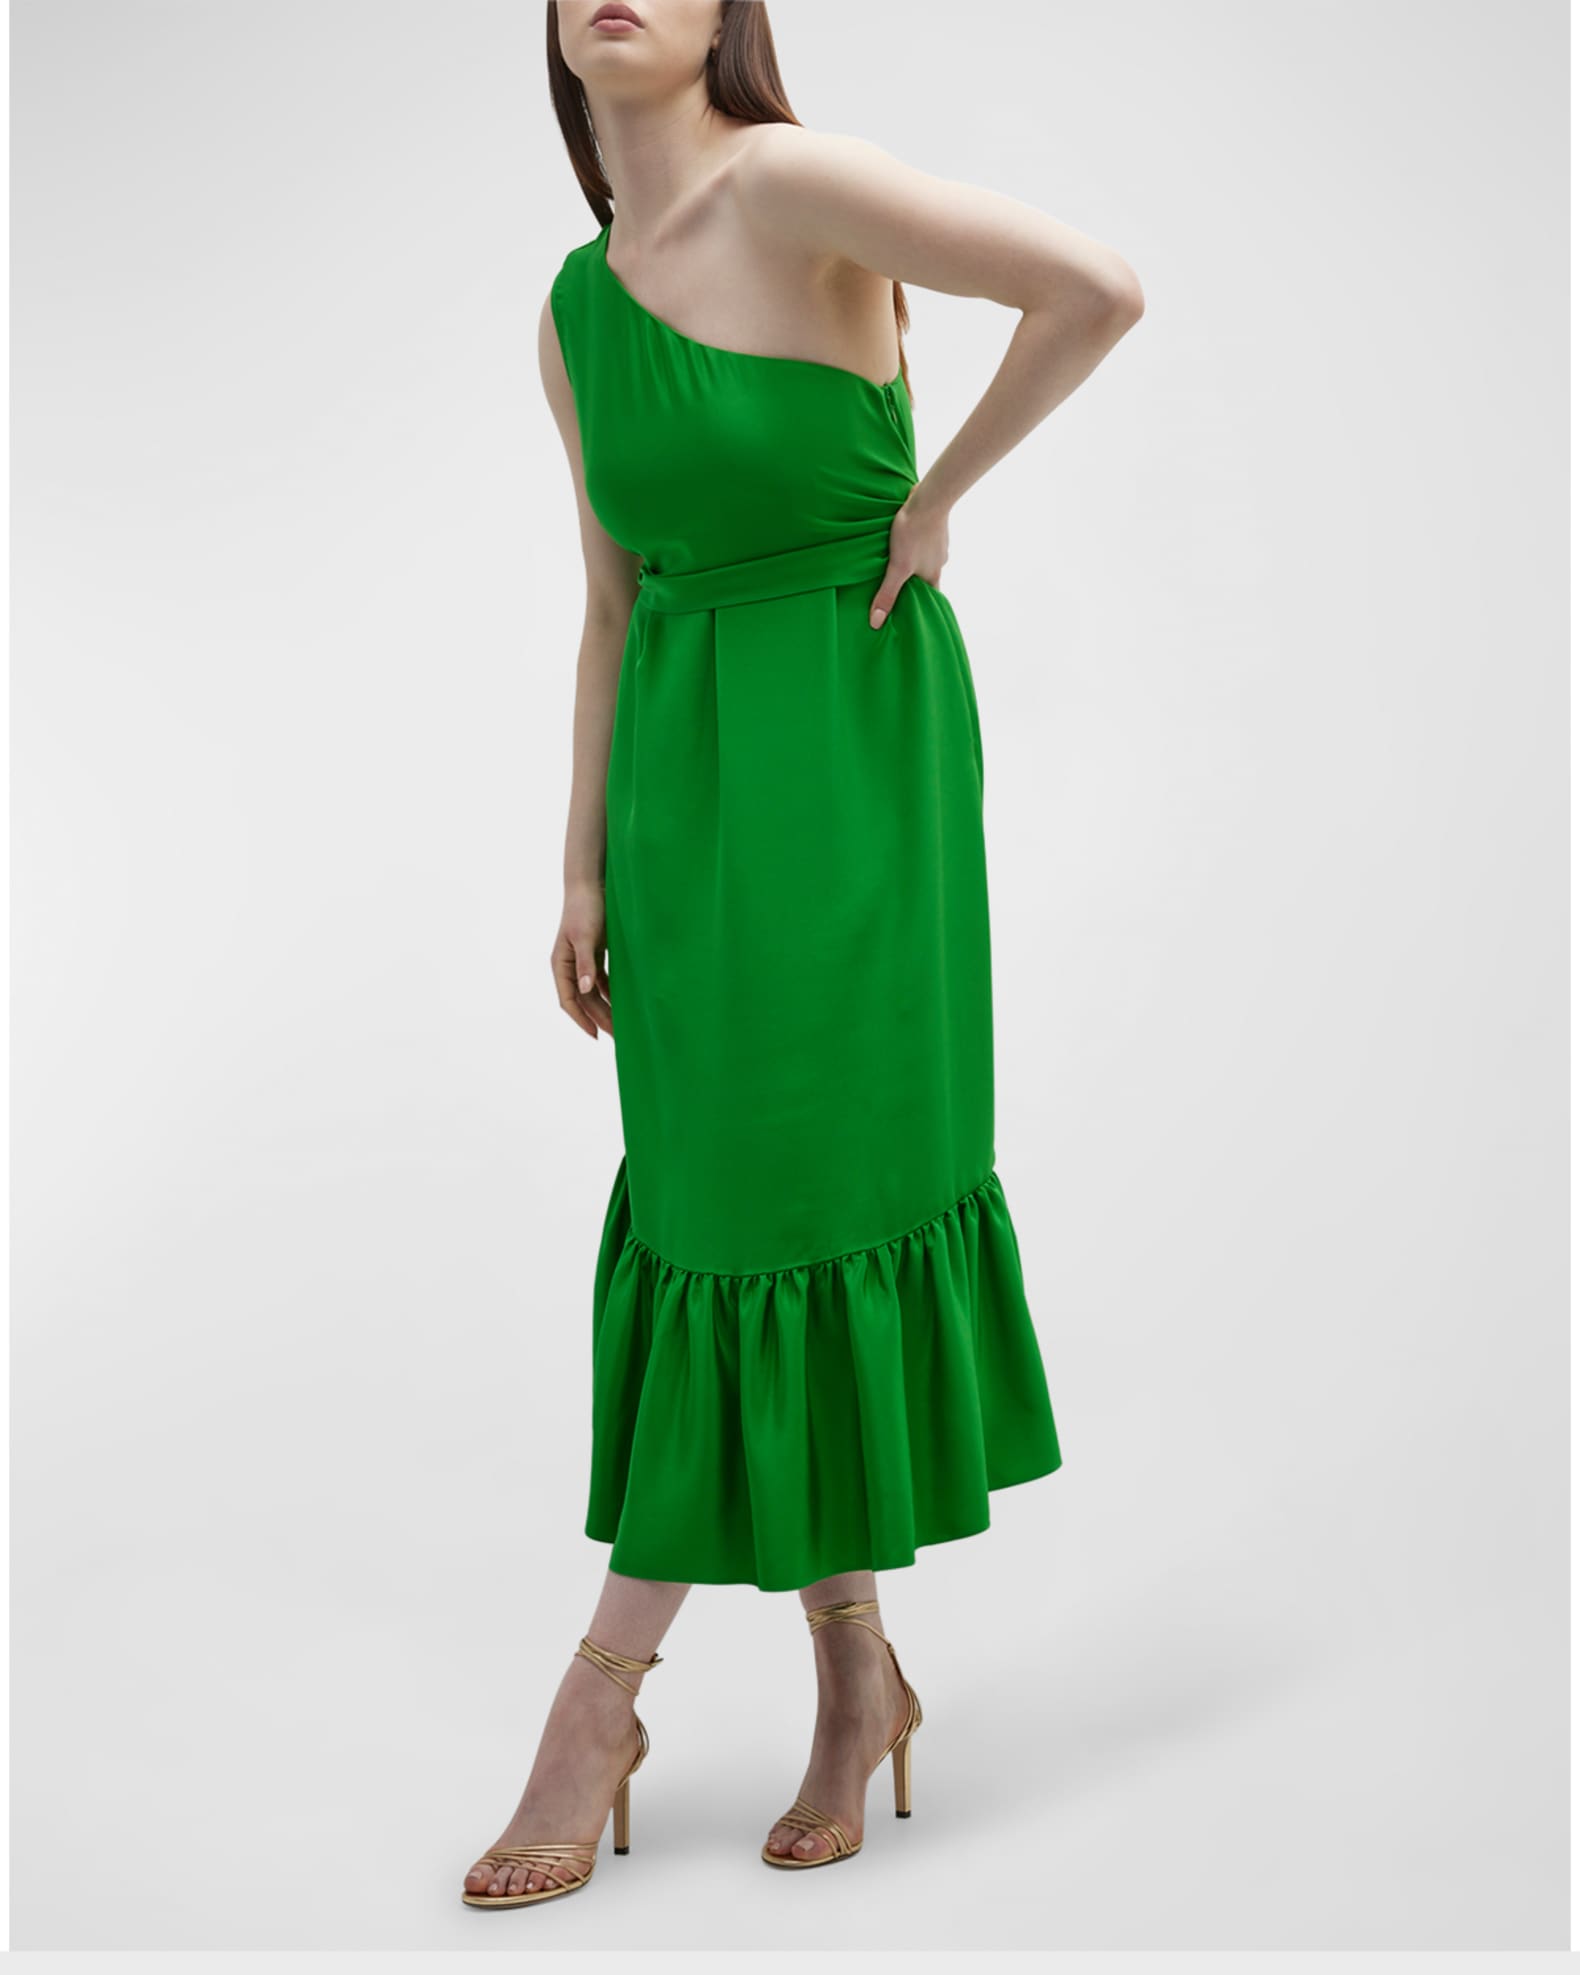 Gabriella Rossetti Fiorella One-Shoulder Ruffle Midi Dress | Neiman Marcus